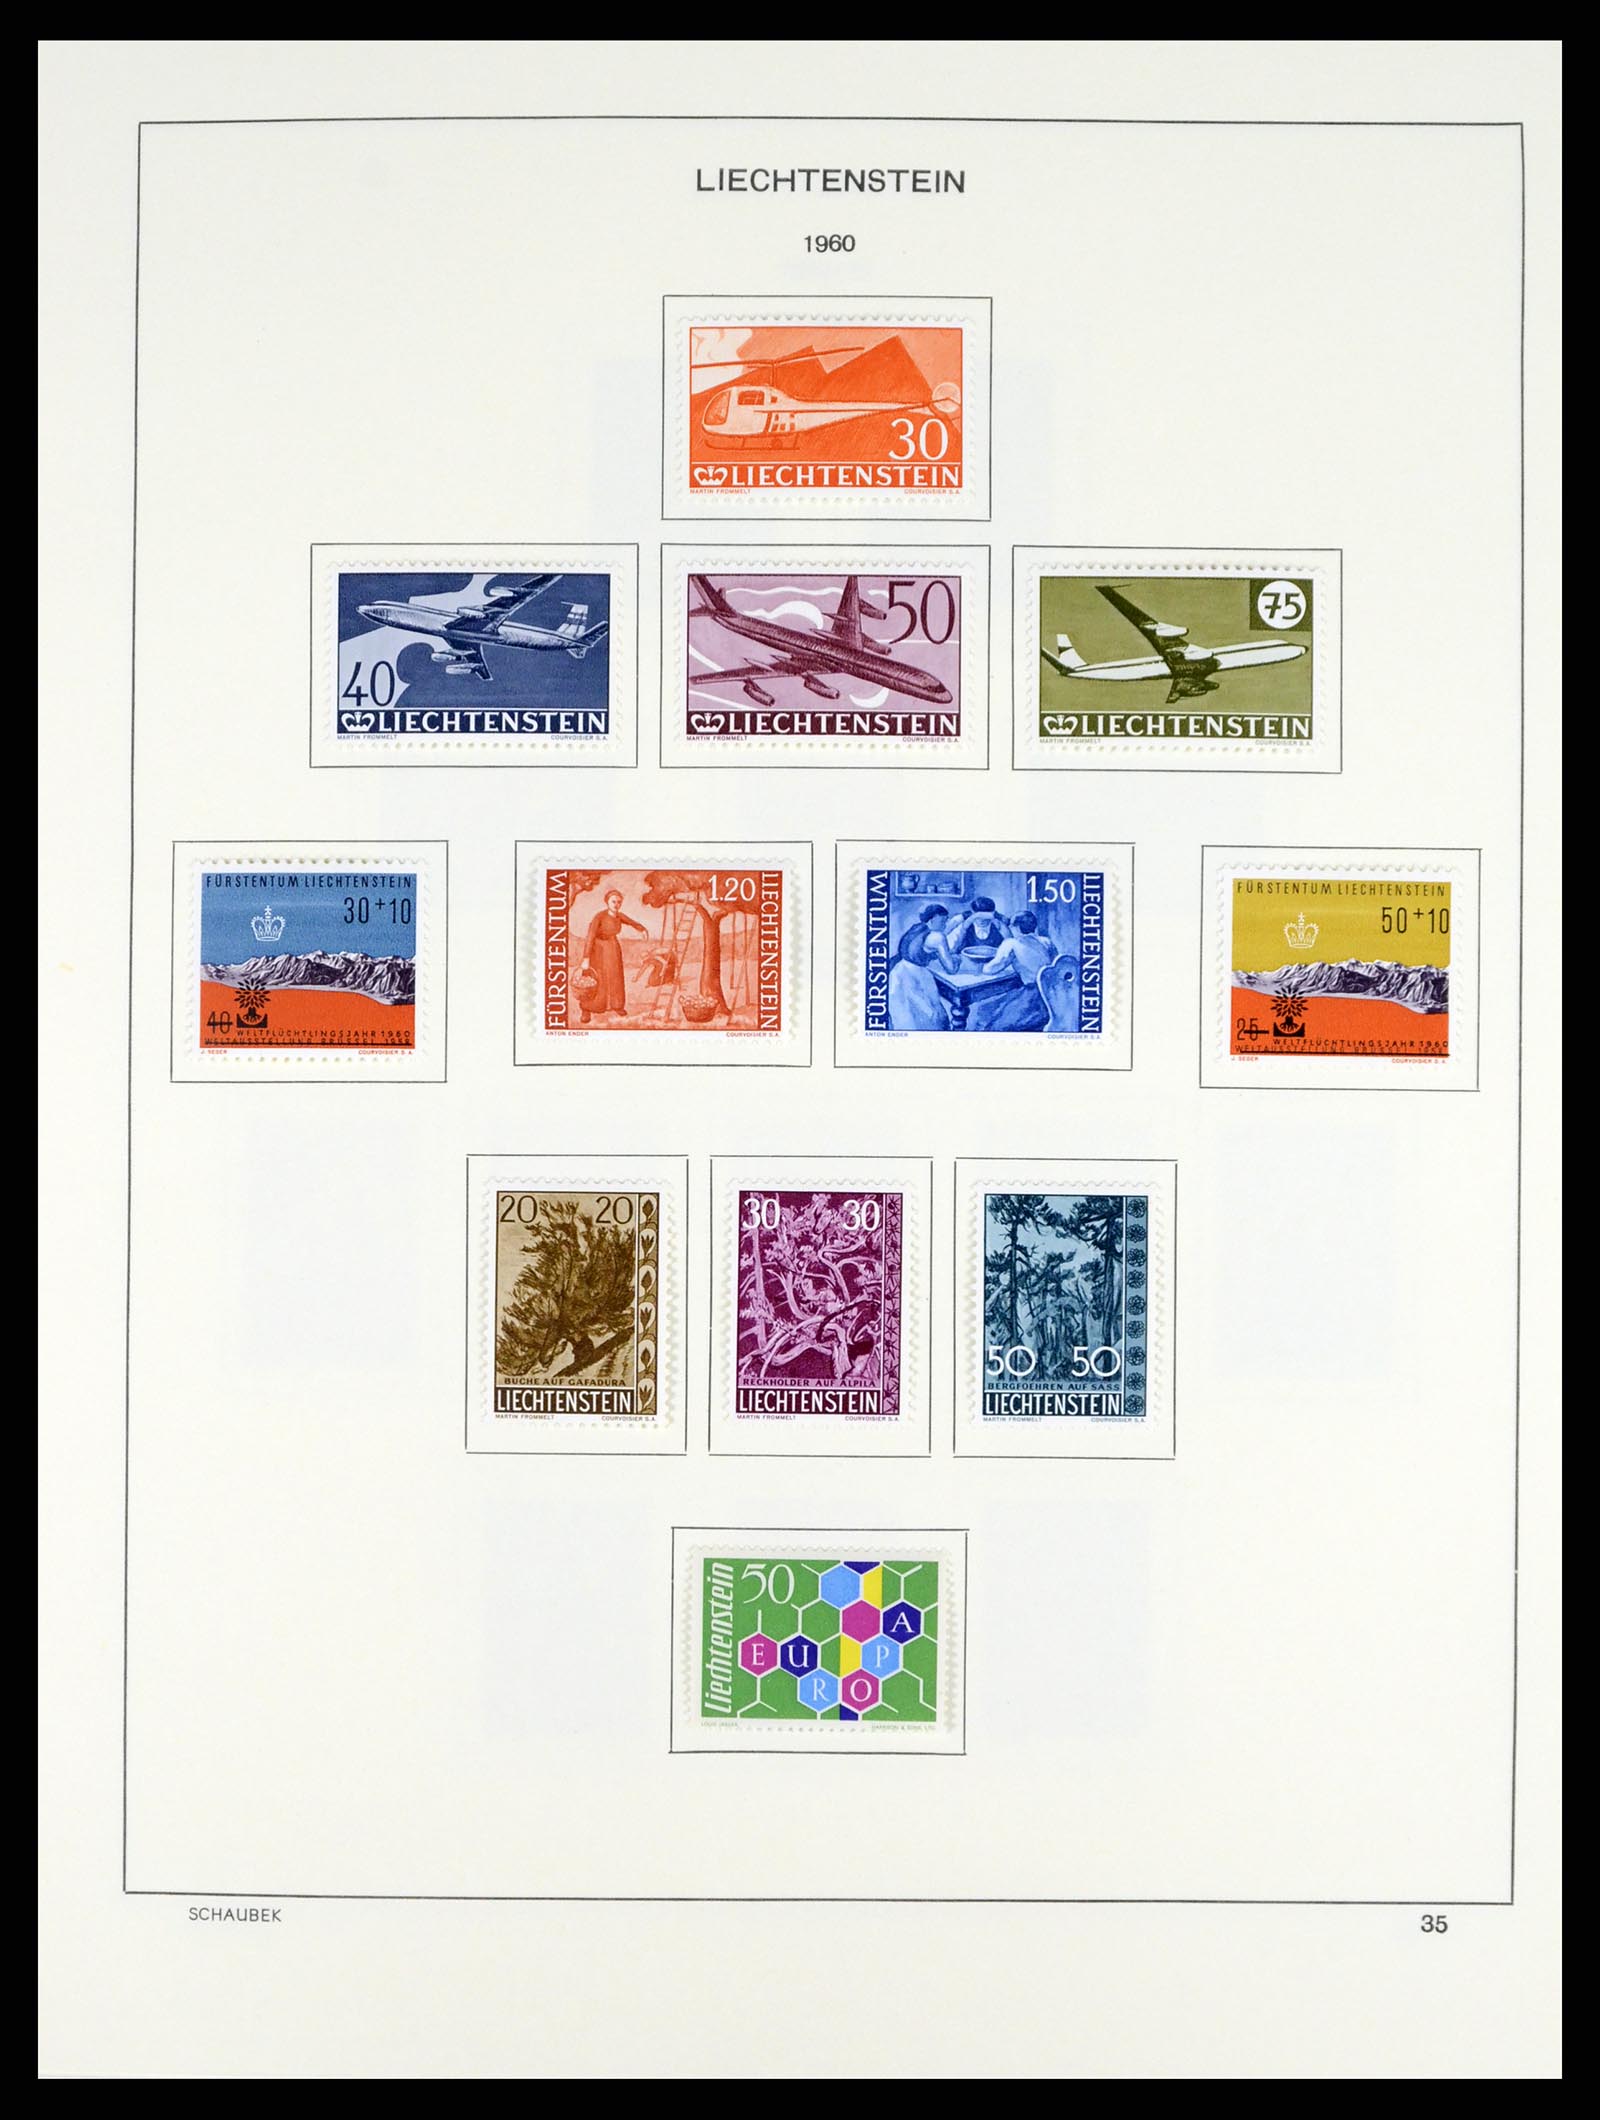 37547 041 - Stamp collection 37547 Liechtenstein 1912-2011.